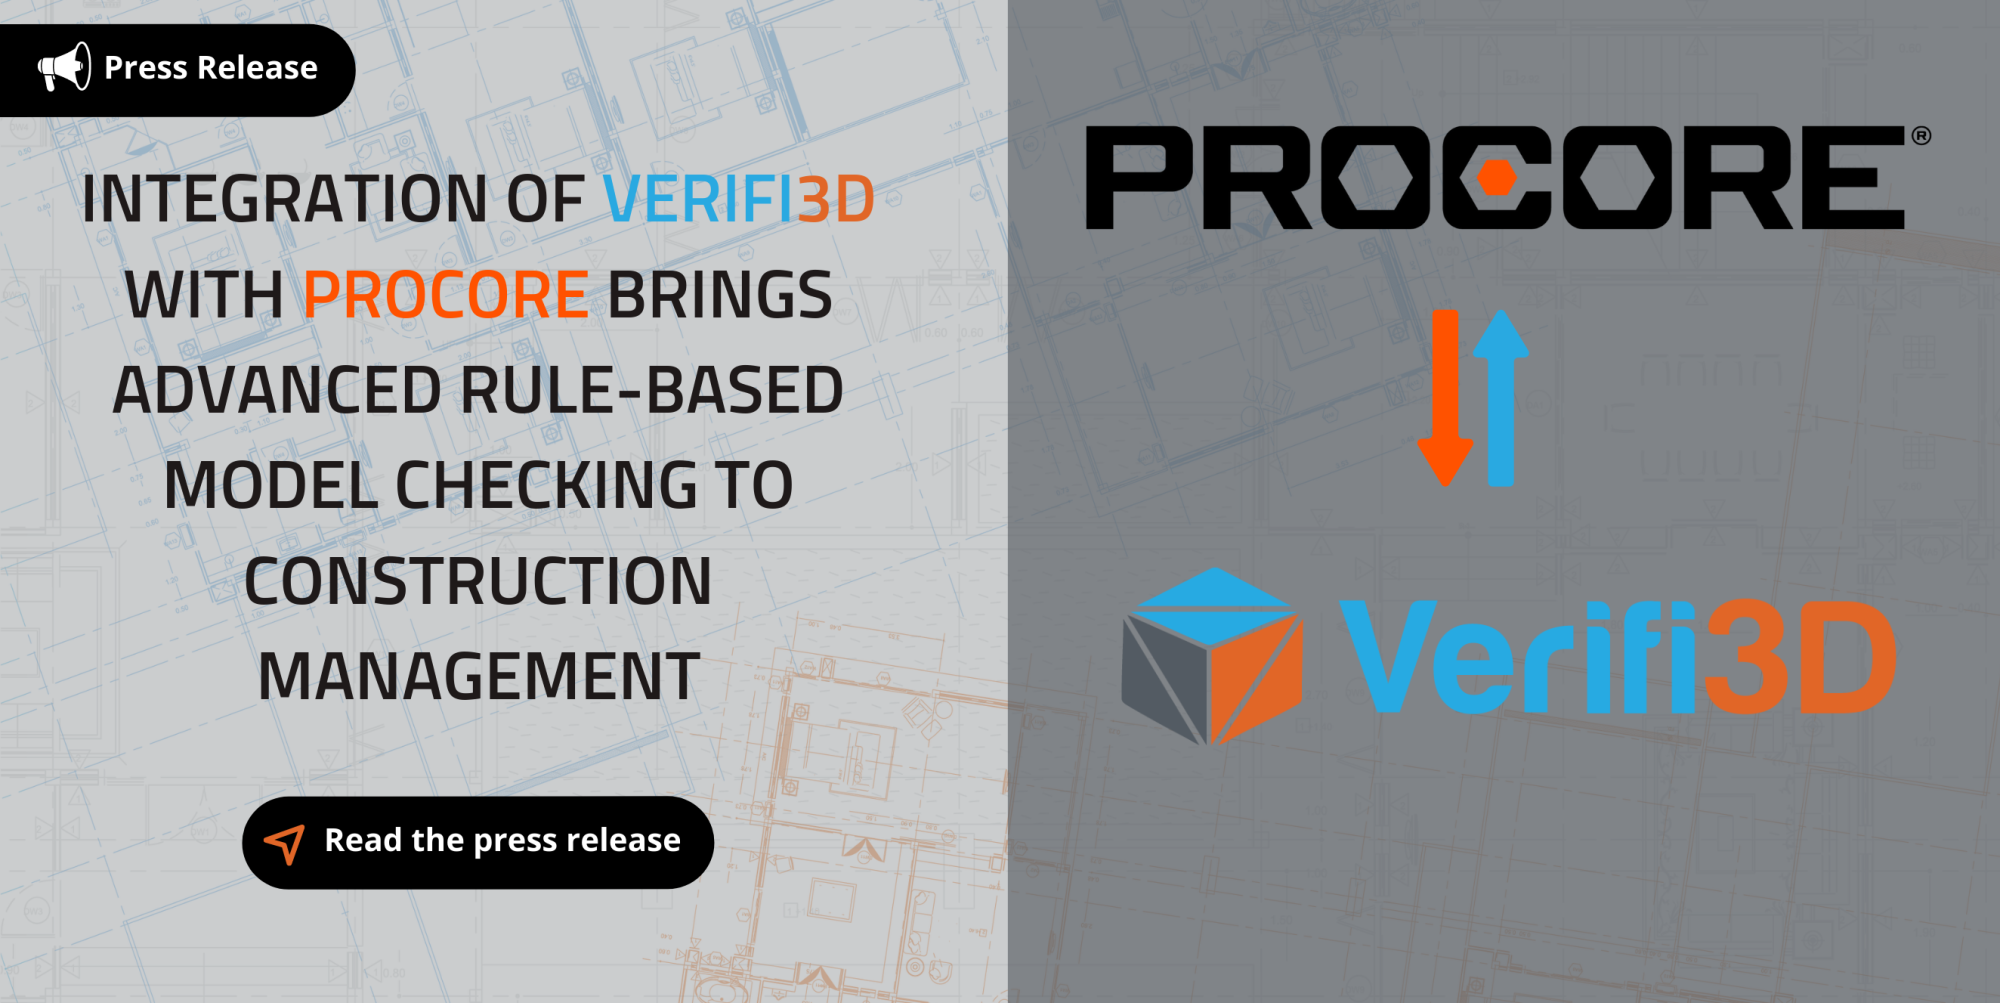 Verifi3D Press Release - Procore construction management software